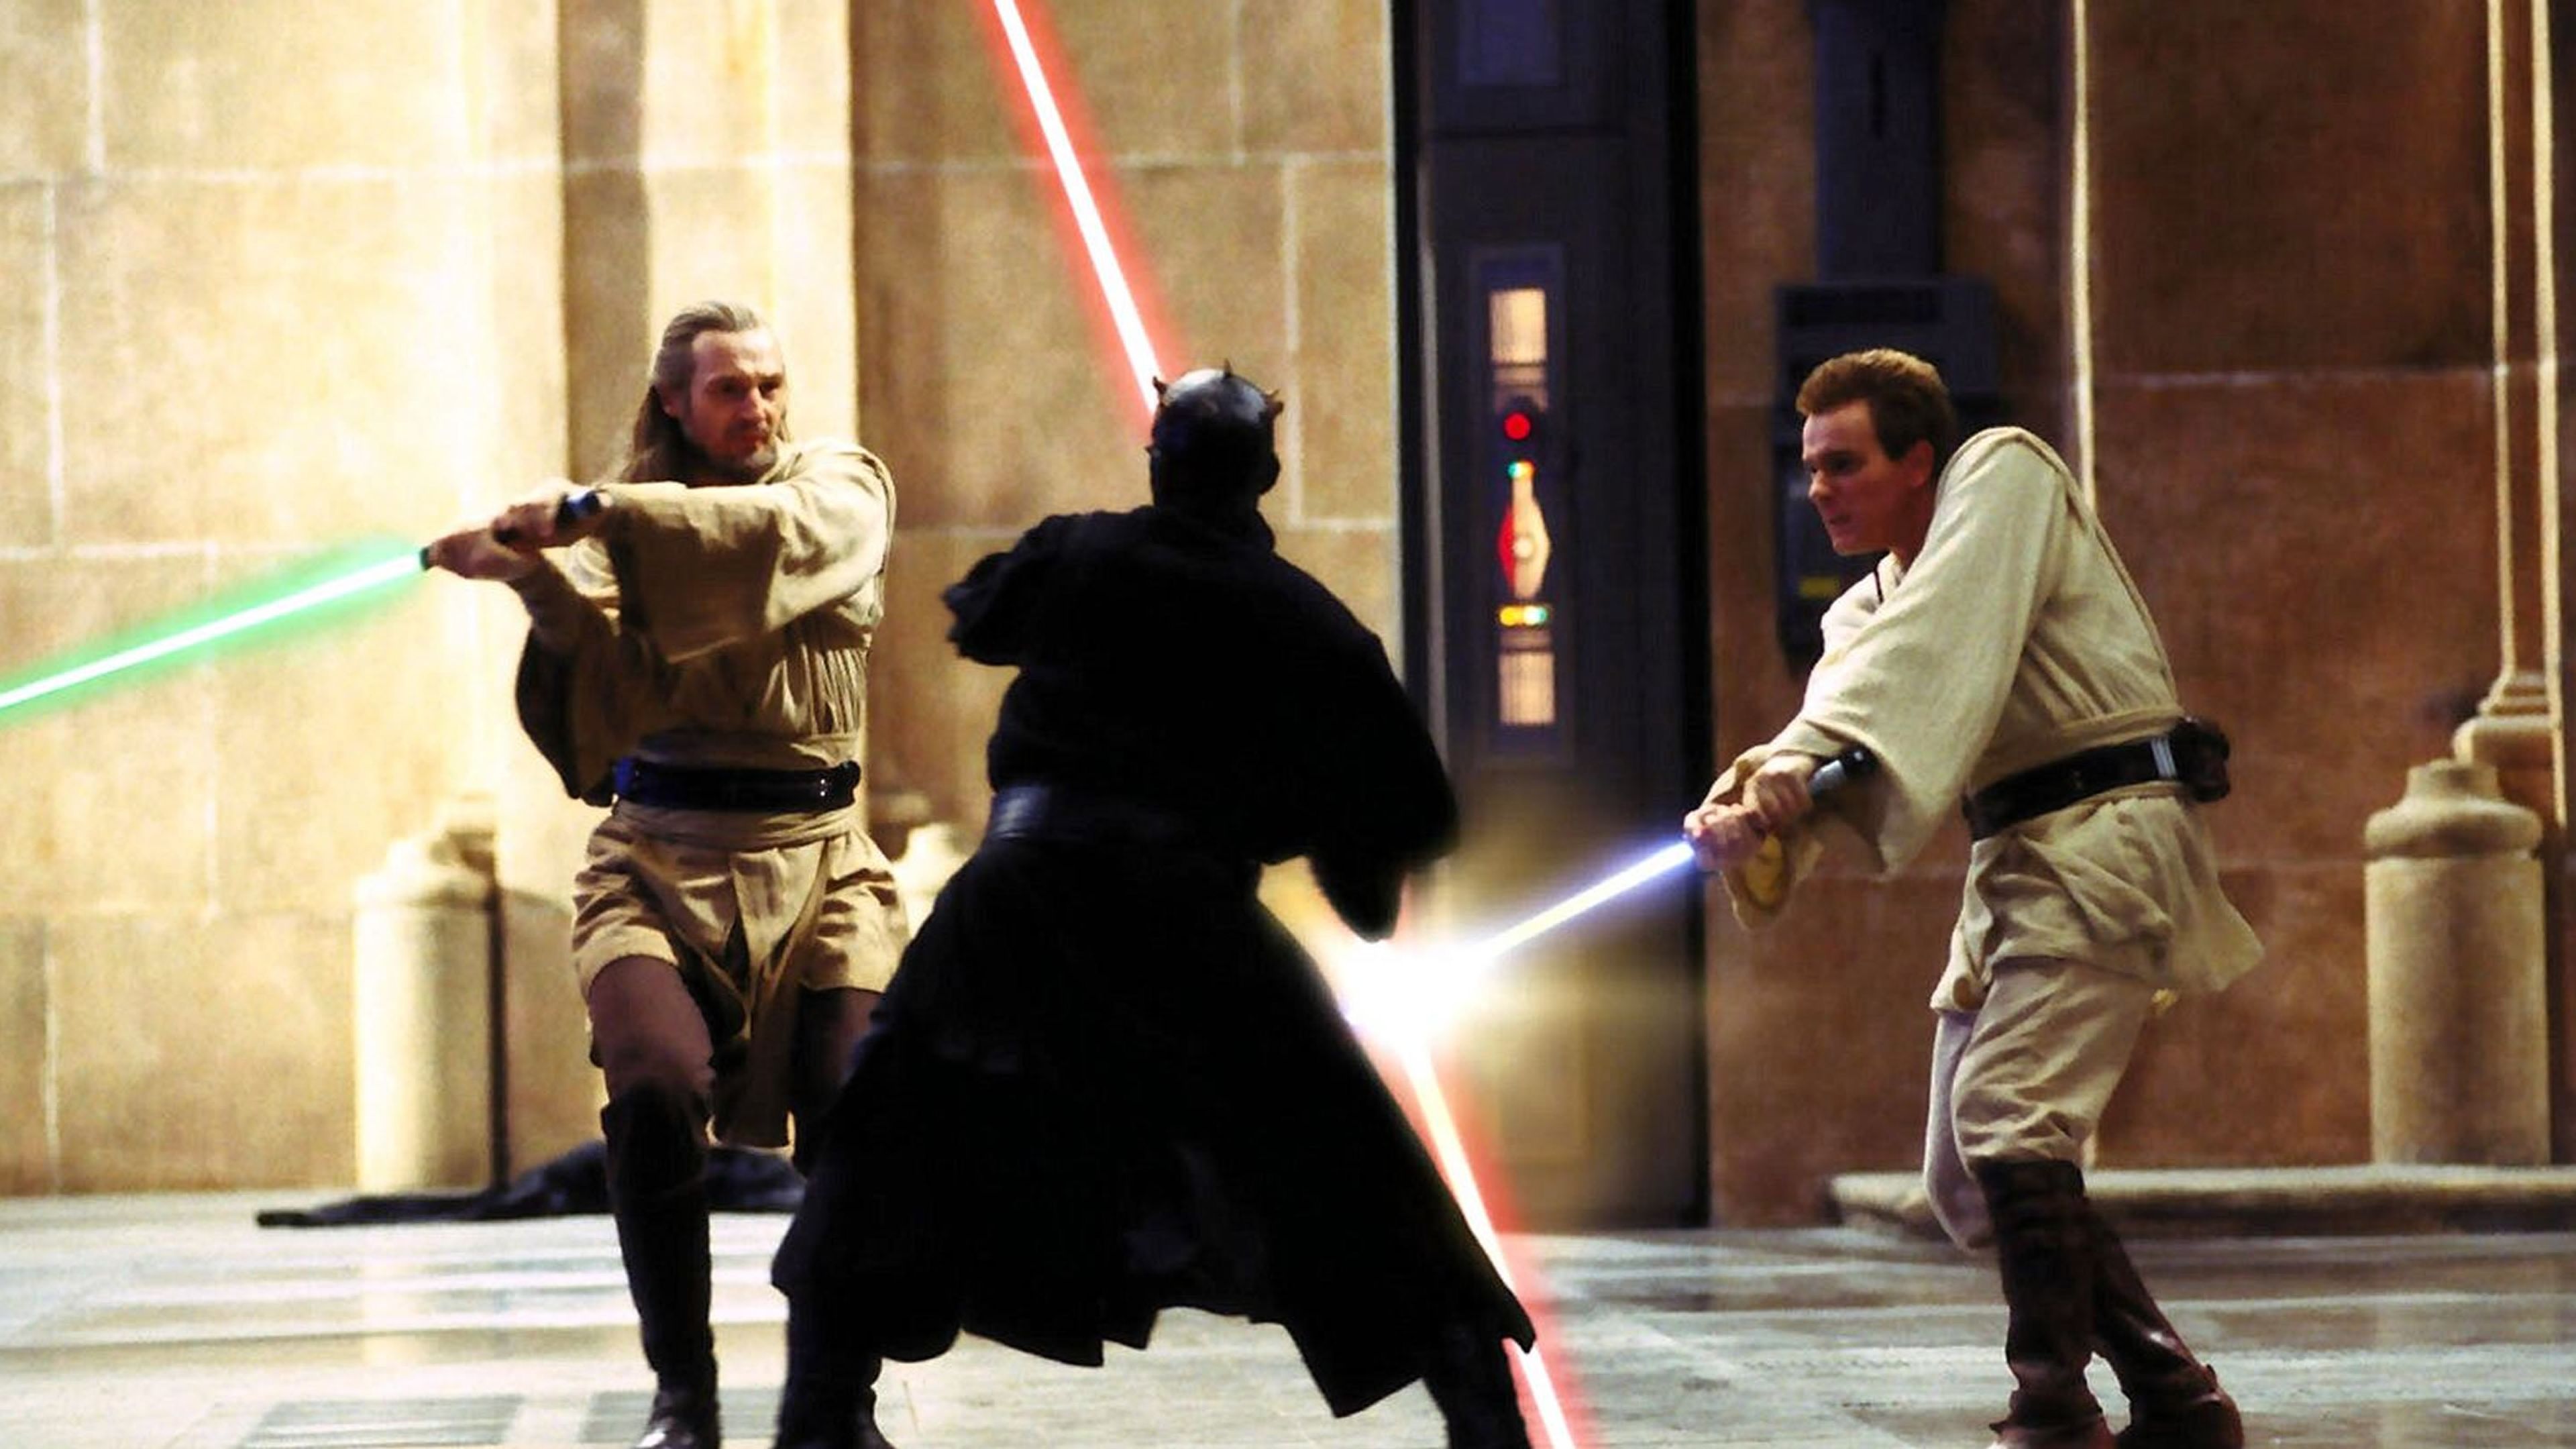 Star Wars: Episodio I - La amenaza fantasma (1999) - Qui-Gon Jinn (Liam Neeson), Darth Maul (Ray Park) y Obi-Wan Kenobi (Ewan McGregor) en Naboo